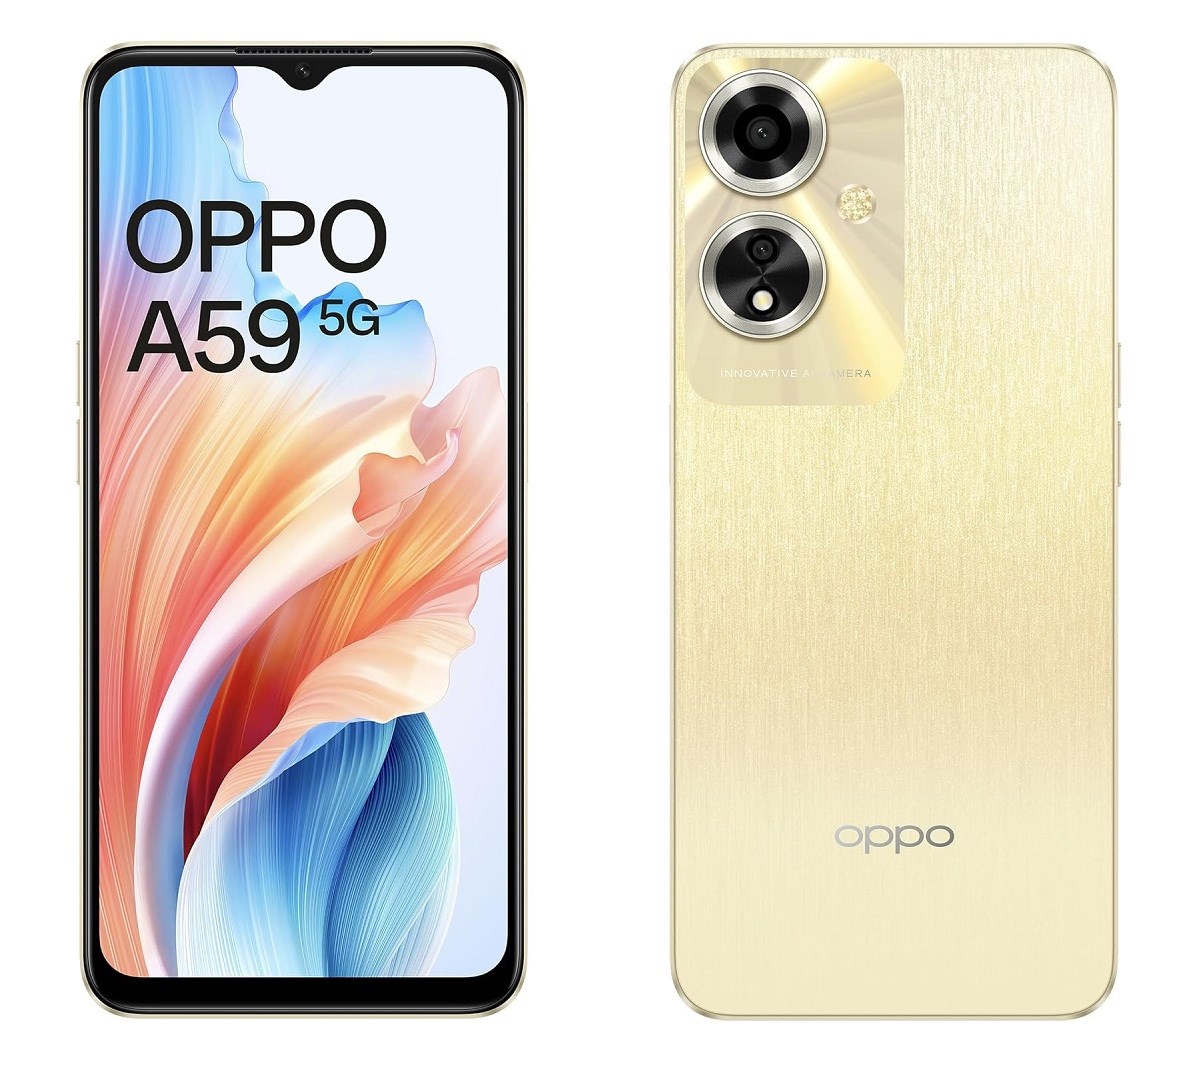 Oppo A59 5G tanıtıldı: İşte özellikleri ve fiyatı